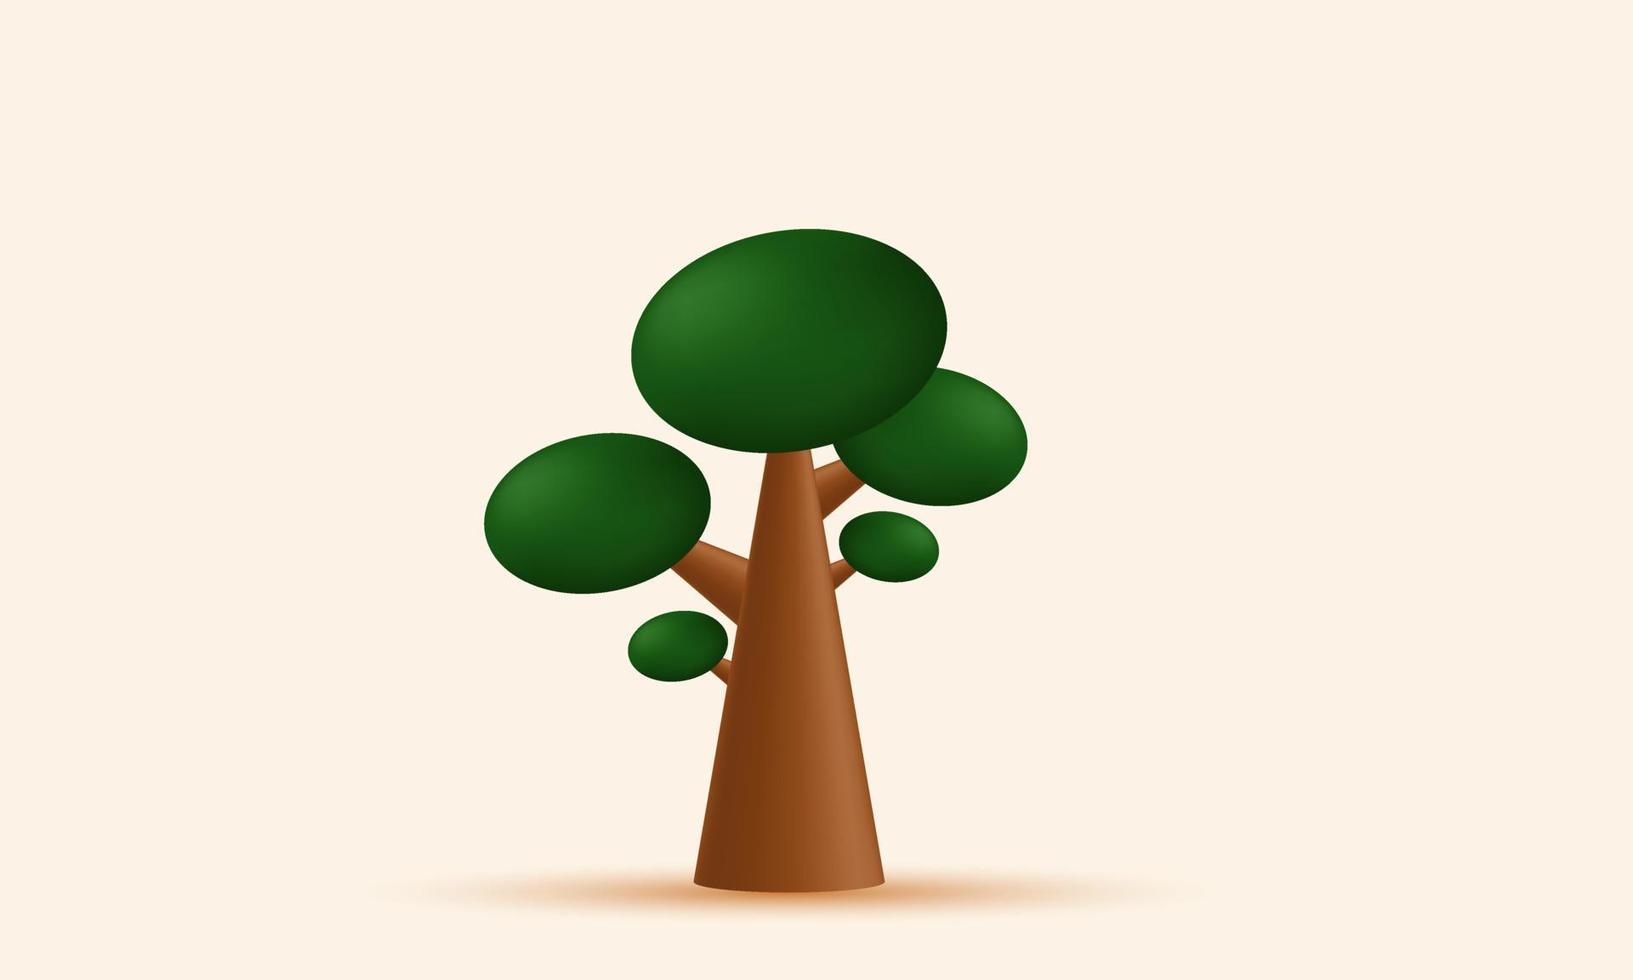 Illustration realistisch absract Baum 3d Symbol kreativ isoliert auf Hintergrund vektor